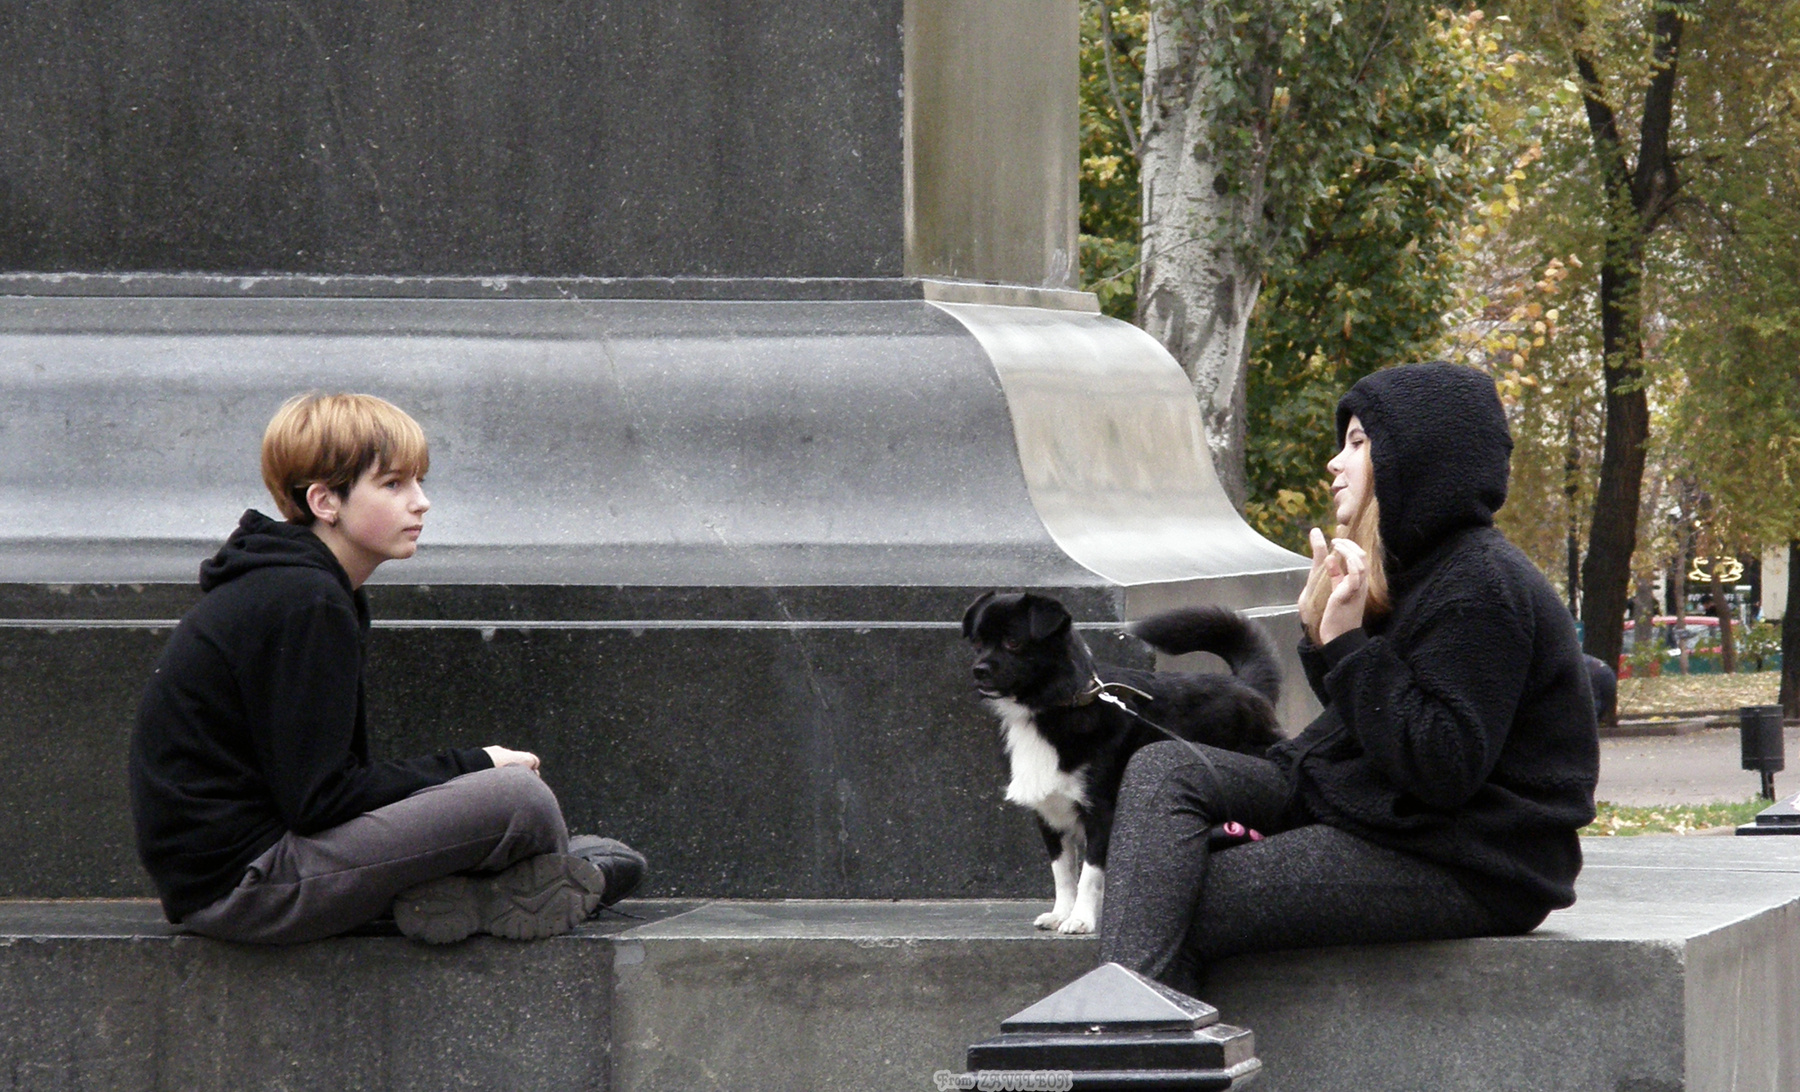 Разговор (...племя молодое, незнакомое...) Соборная площадь подруги собака пьедестал